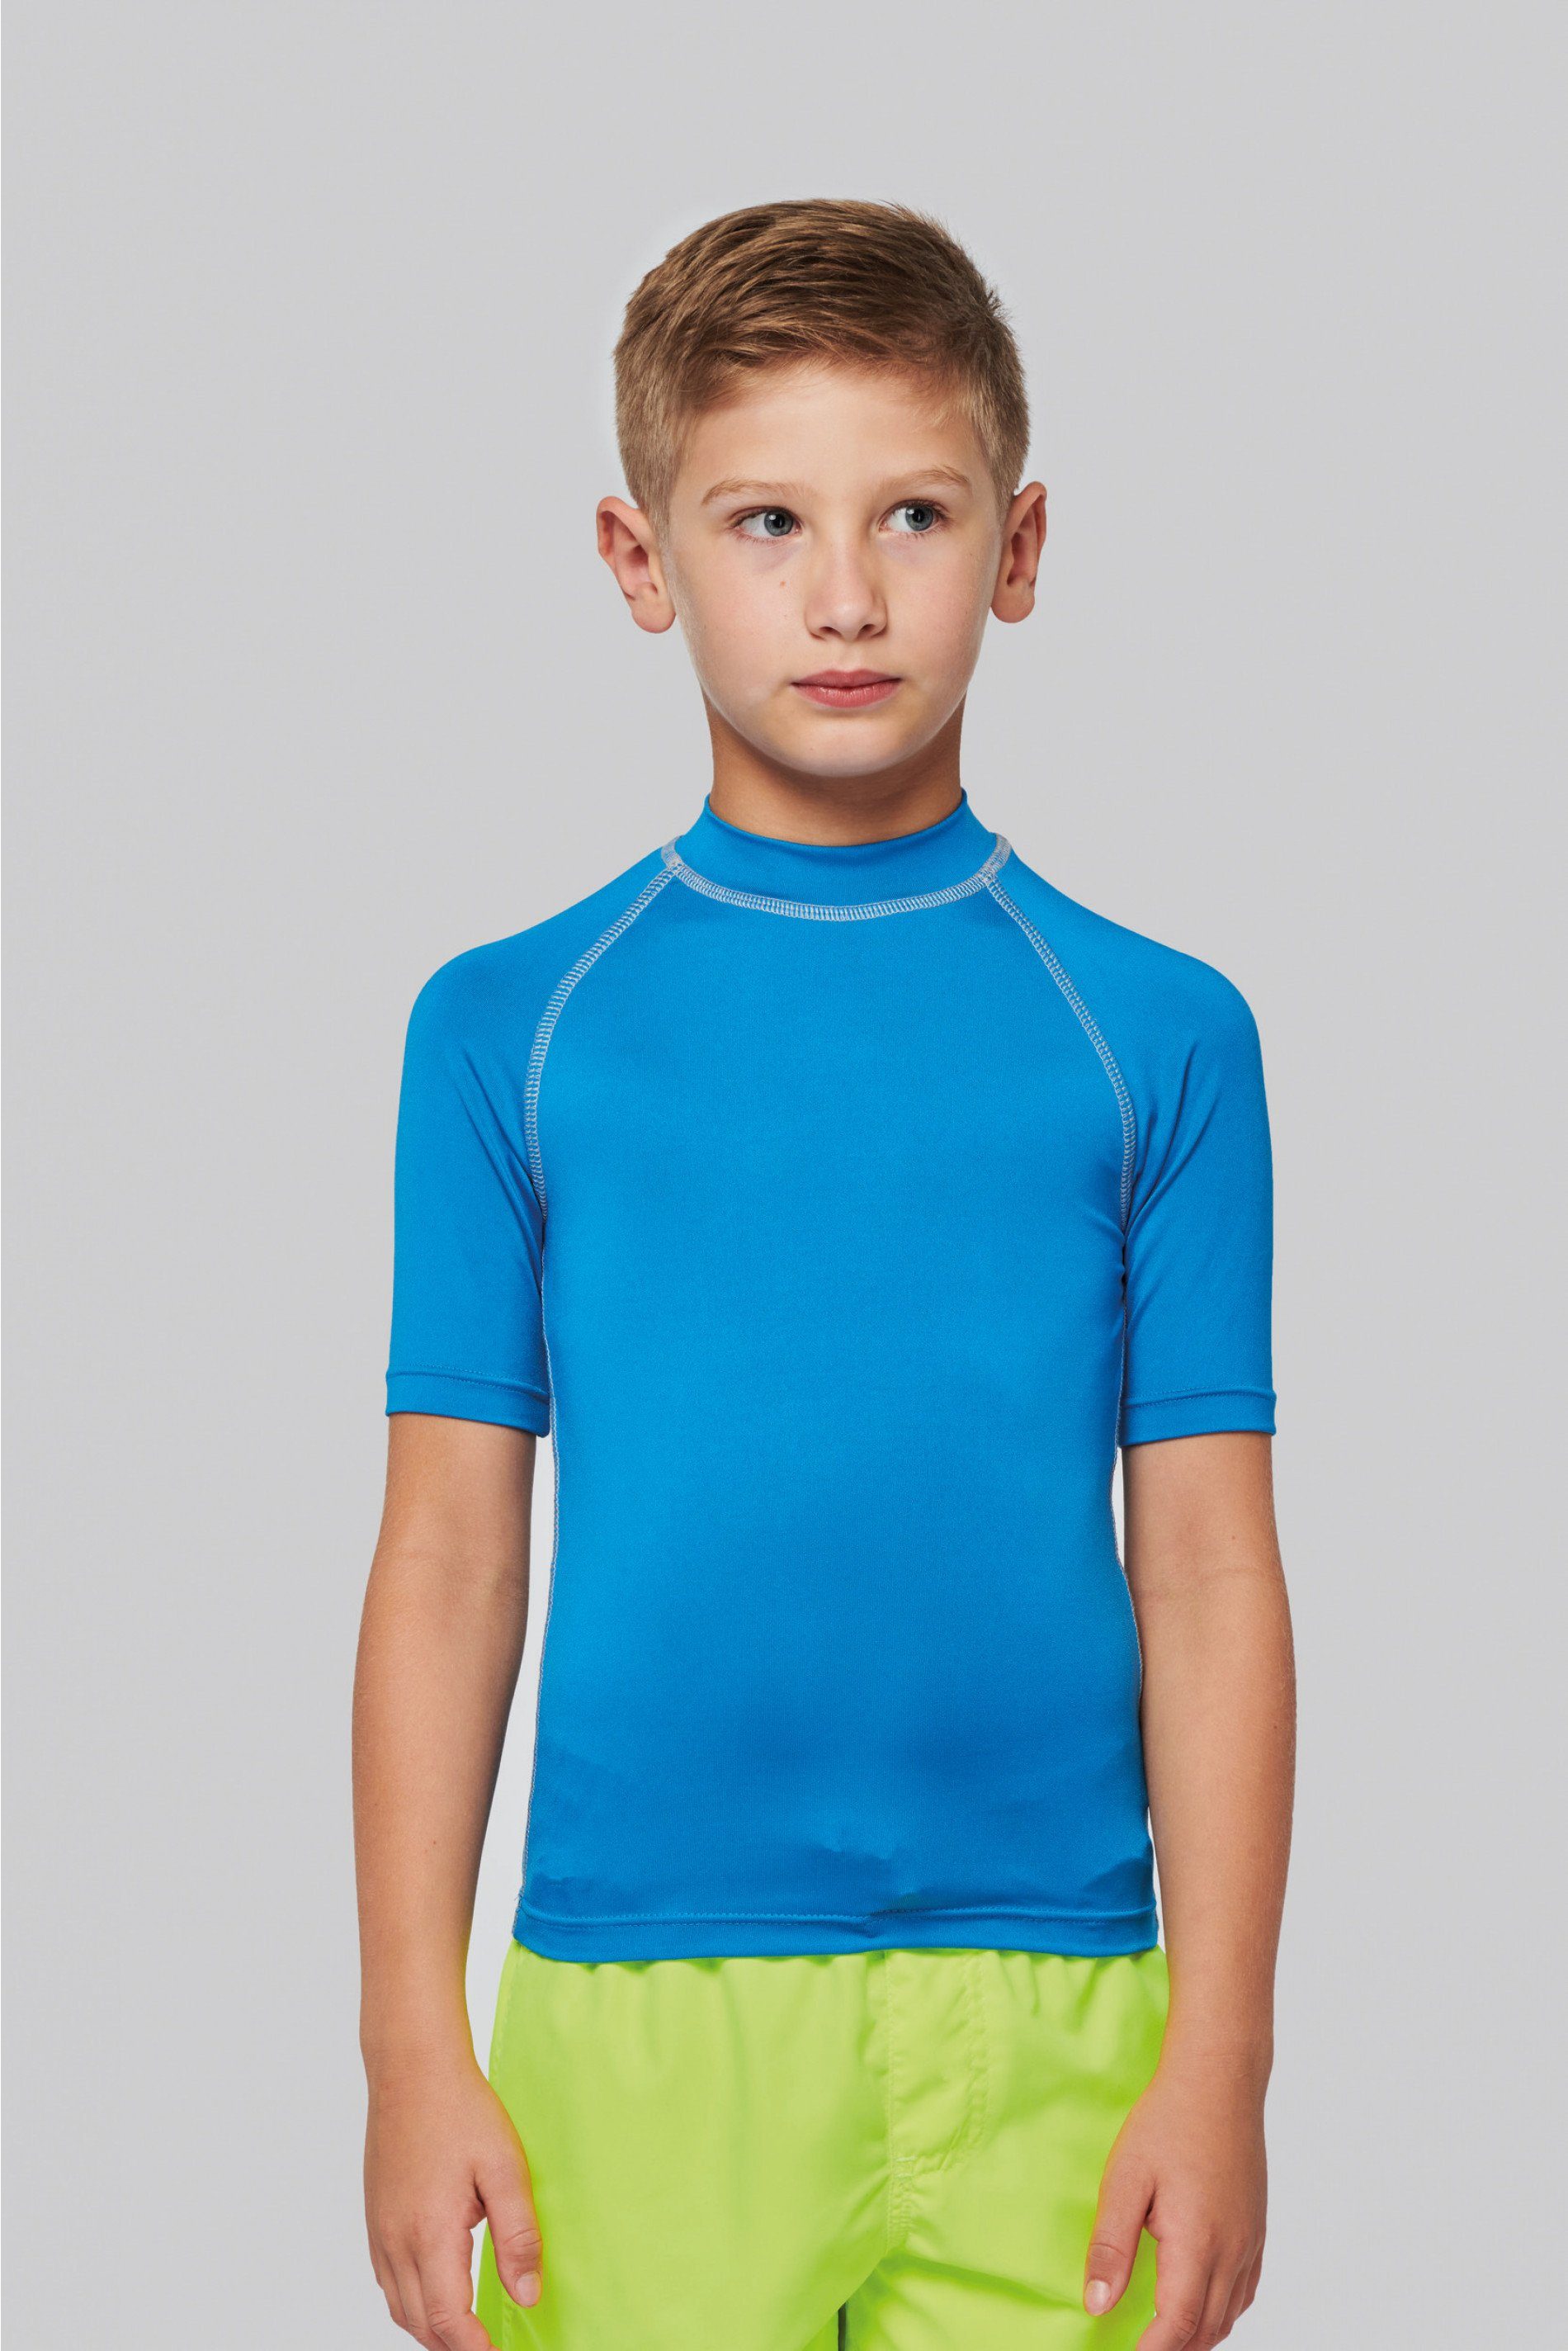 coole-fun-t-shirts Strandshirt »Bade T-Shirt zum Schwimmen Kinder Surfshirt  Jumngen und Mädchen UV 40+ blau, dunkelblau und neongelb Gr. 6 7 8 9 10 11  12 13 14 Jahre« online kaufen | OTTO